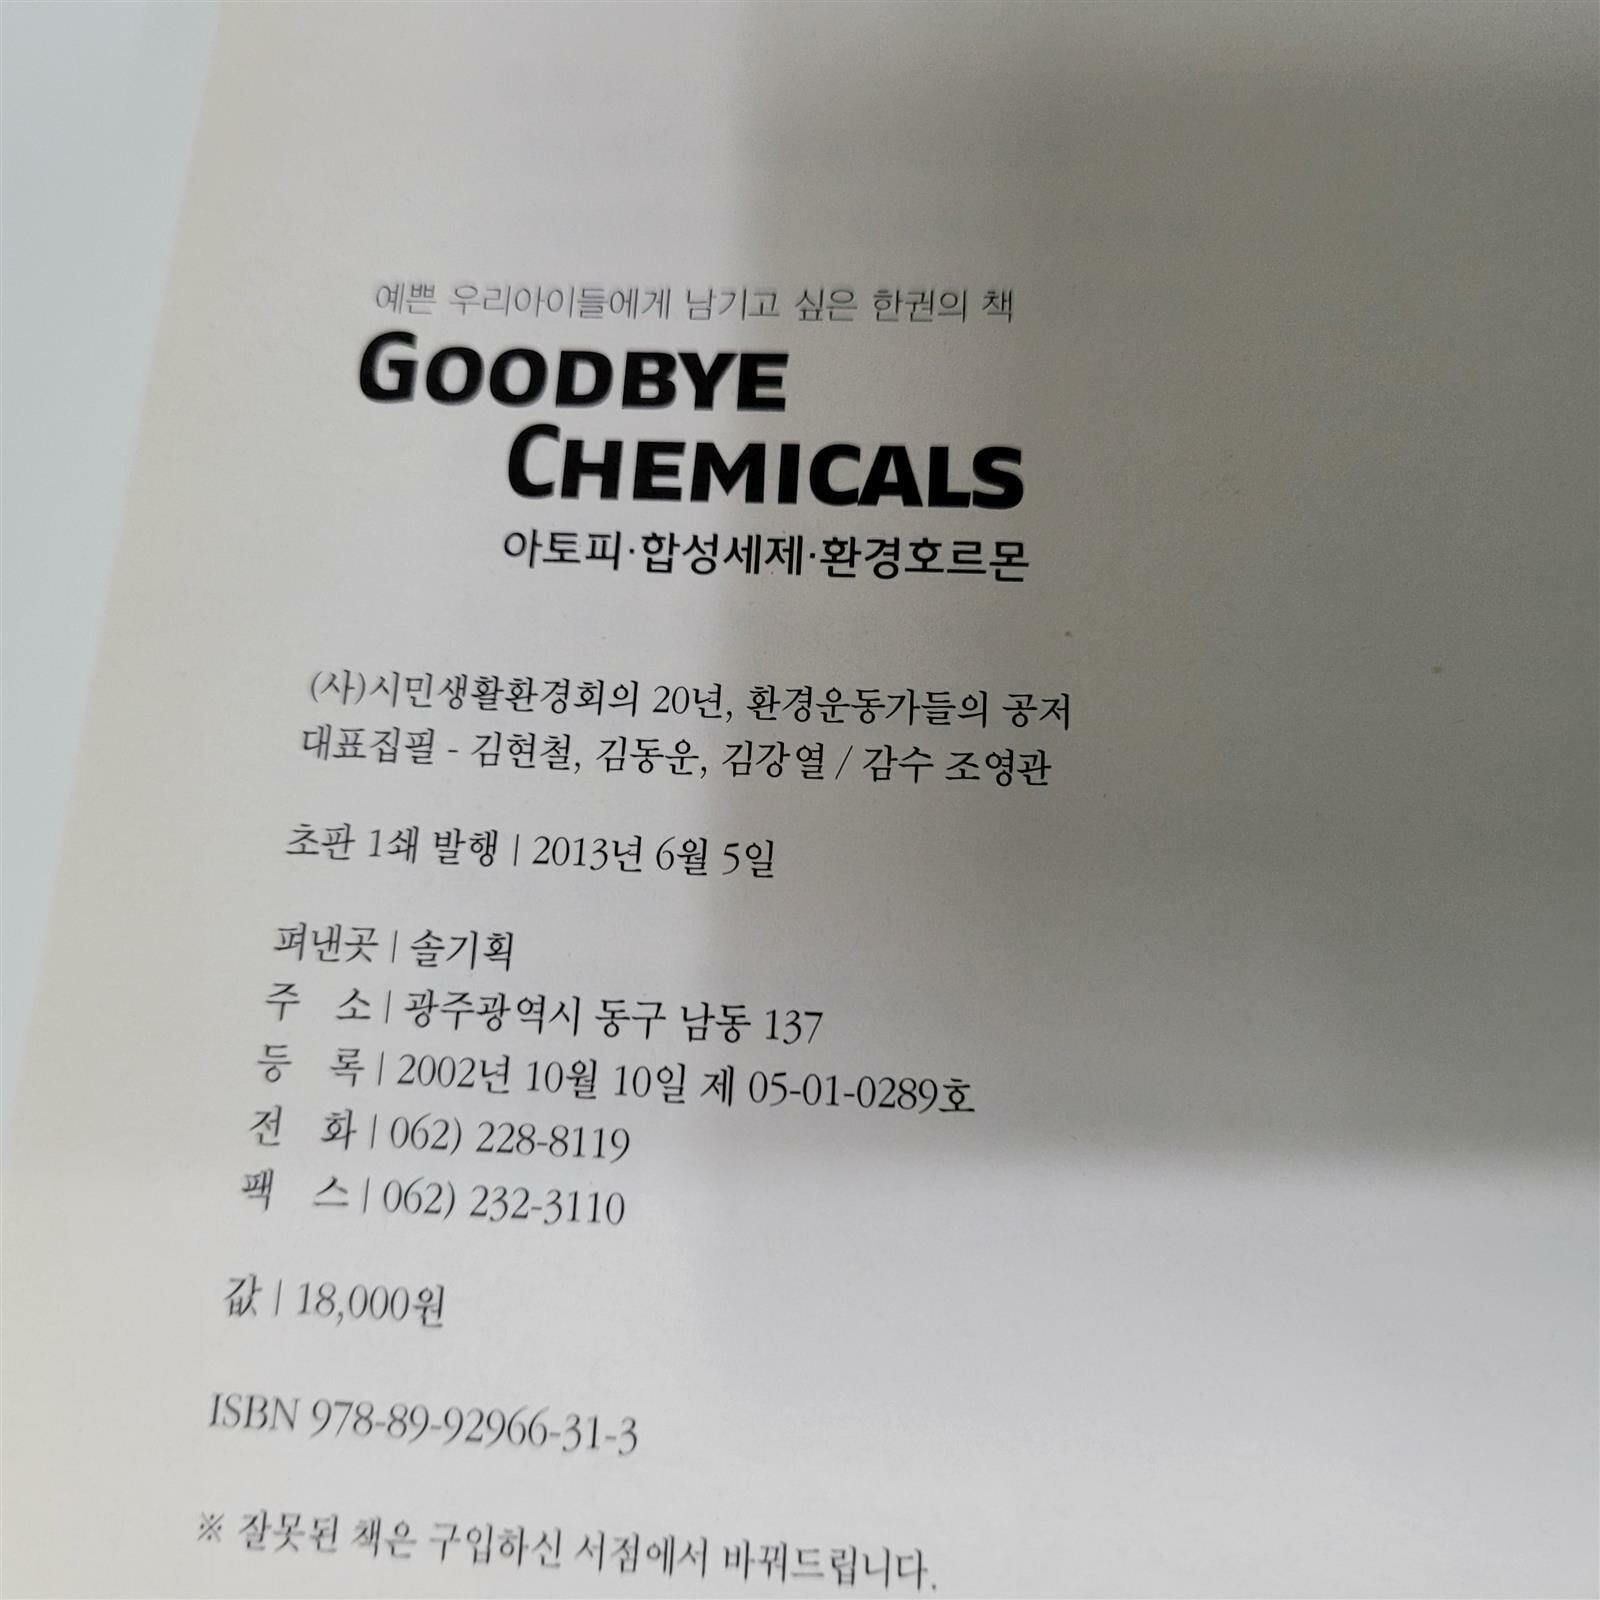 예쁜 우리아이들에게 남기고 싶은 한권의 책 Goodbye Chemicals (아토피 합성세제 환경호르몬)